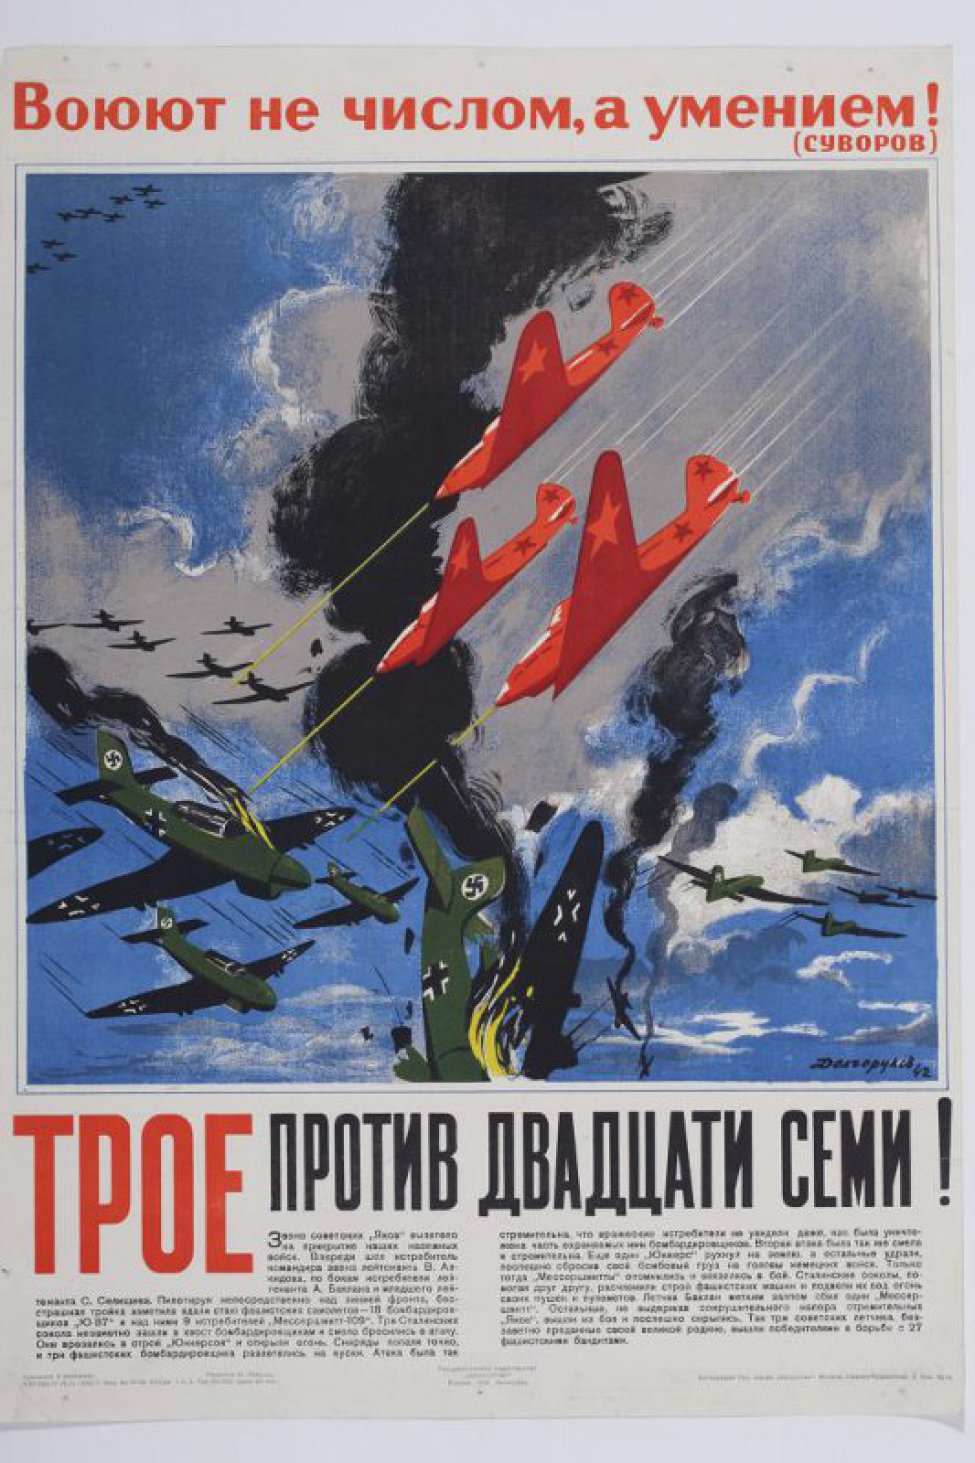 Изображены три советских истребителя " Яки" которые устремились против 27 фашистских самолетов. Четыре вражеских самолета сбиты, остальные улетают обратно.На верху слова Суворова:" Воюют не числом, а умением!".